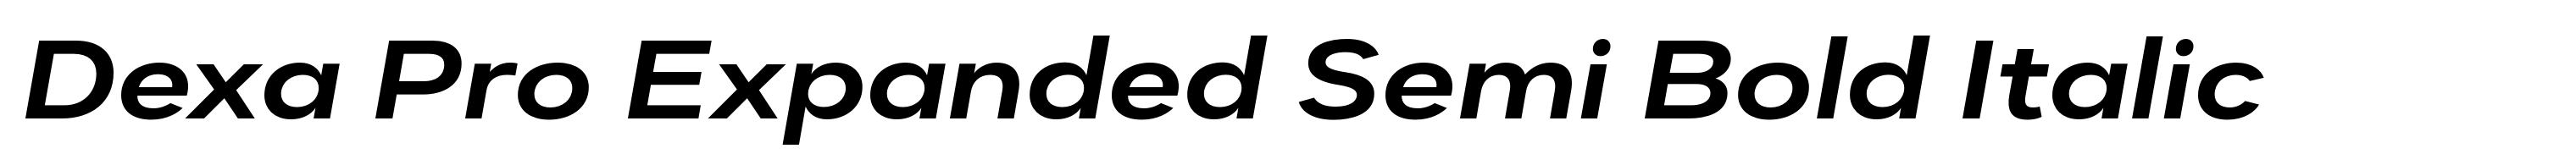 Dexa Pro Expanded Semi Bold Italic